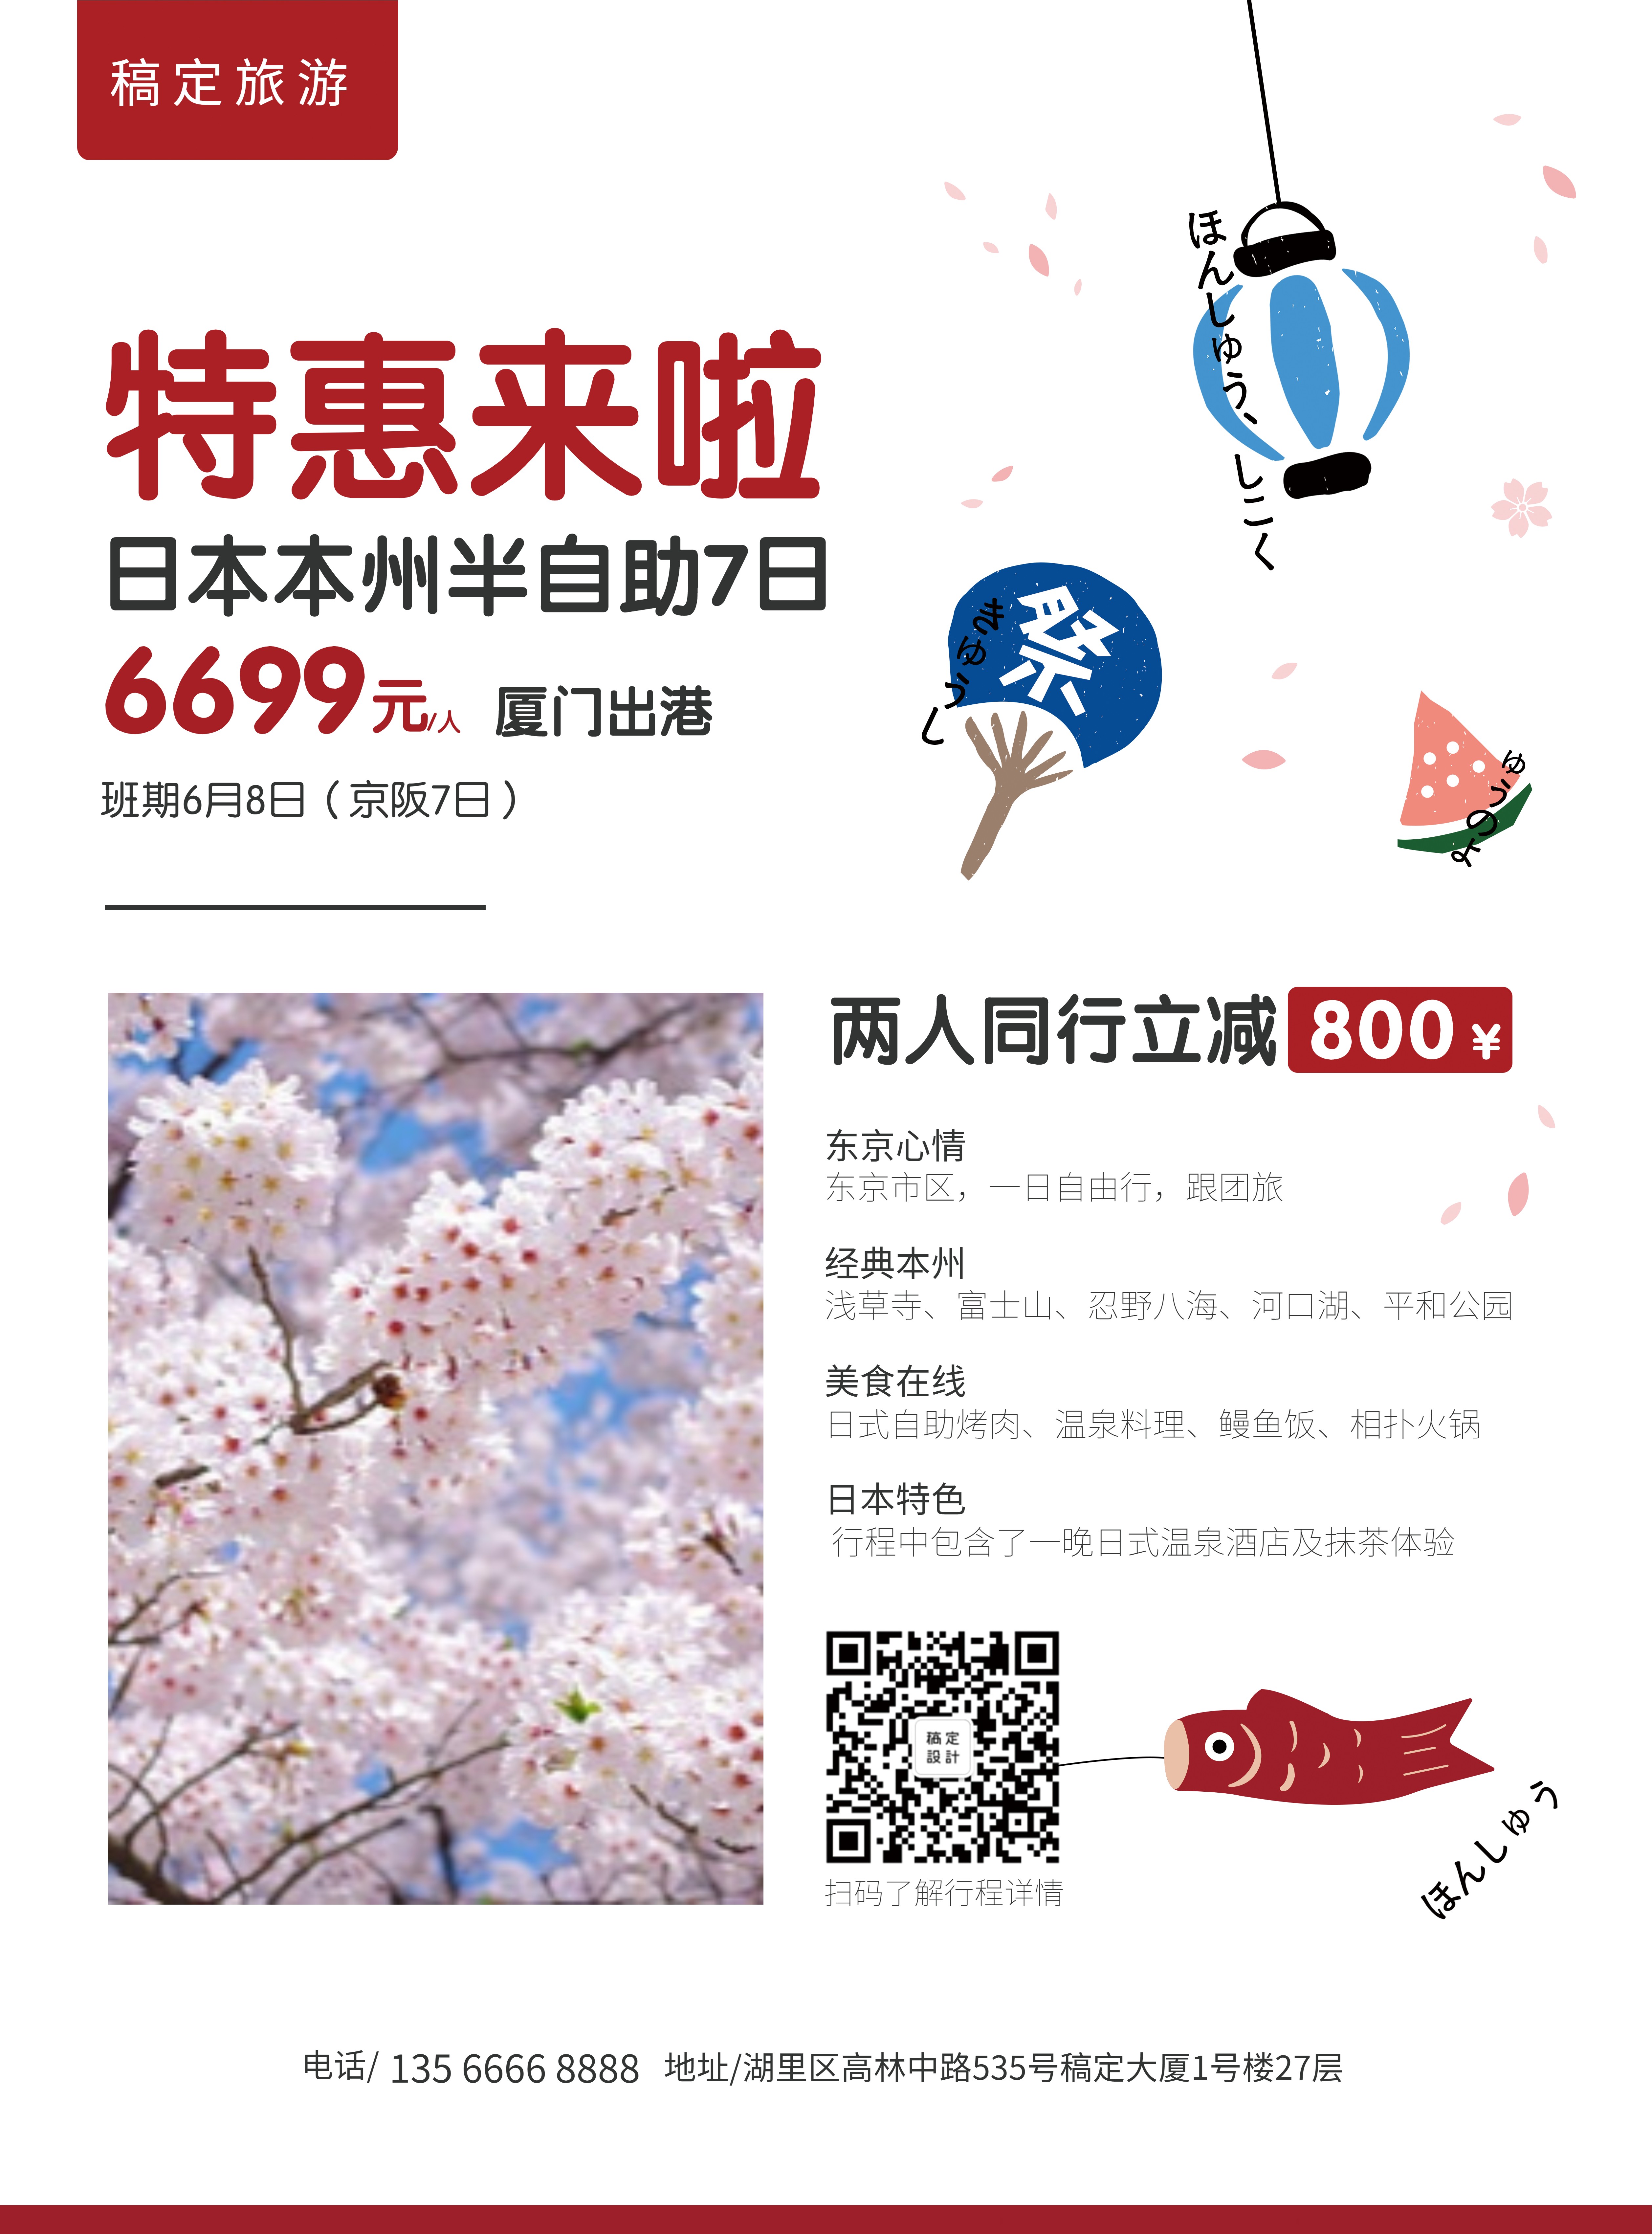 旅游出行日本游优惠折扣张贴海报预览效果